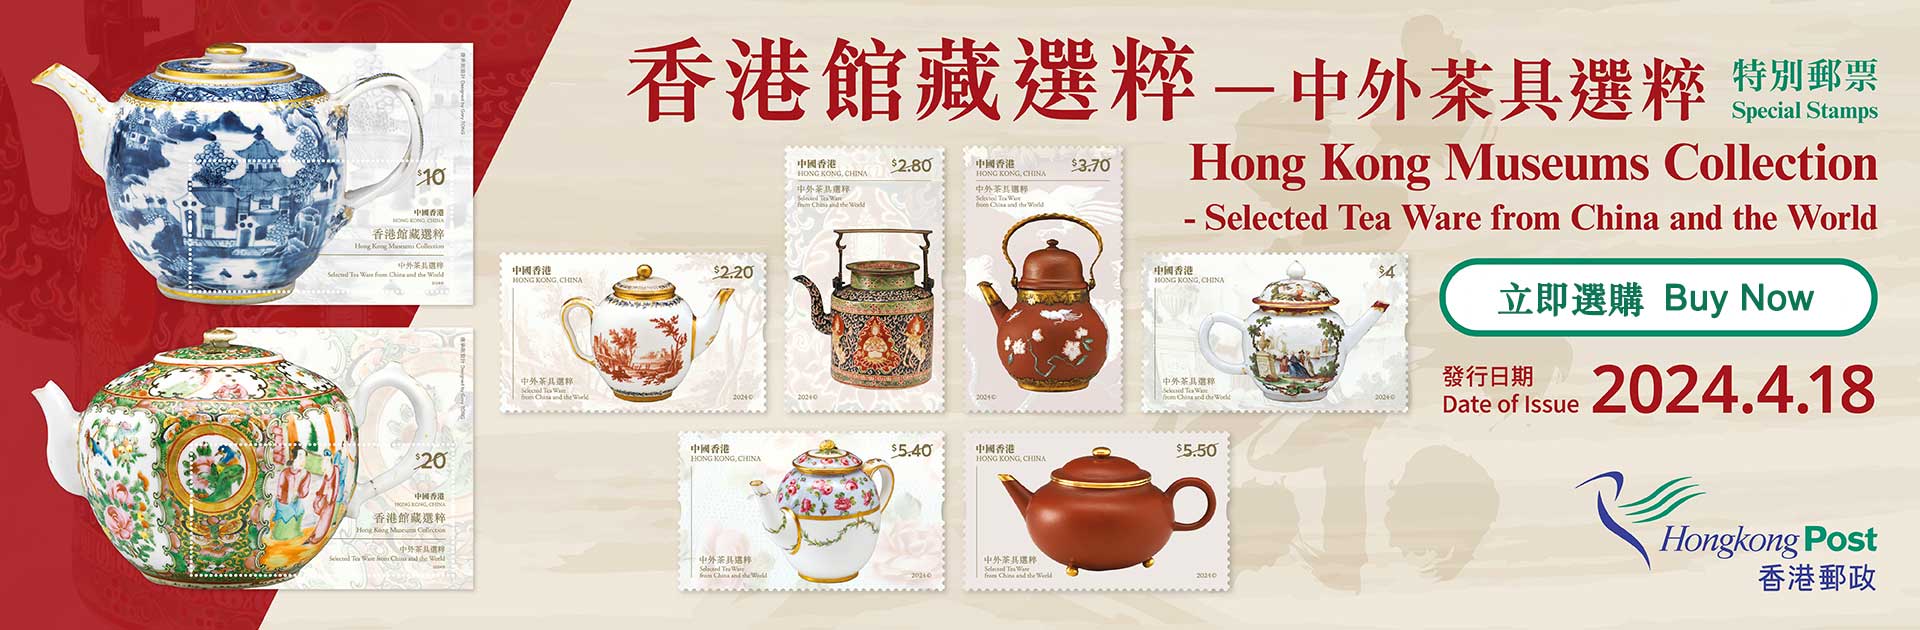 「香港館藏選粹—中外茶具選粹」特別郵票